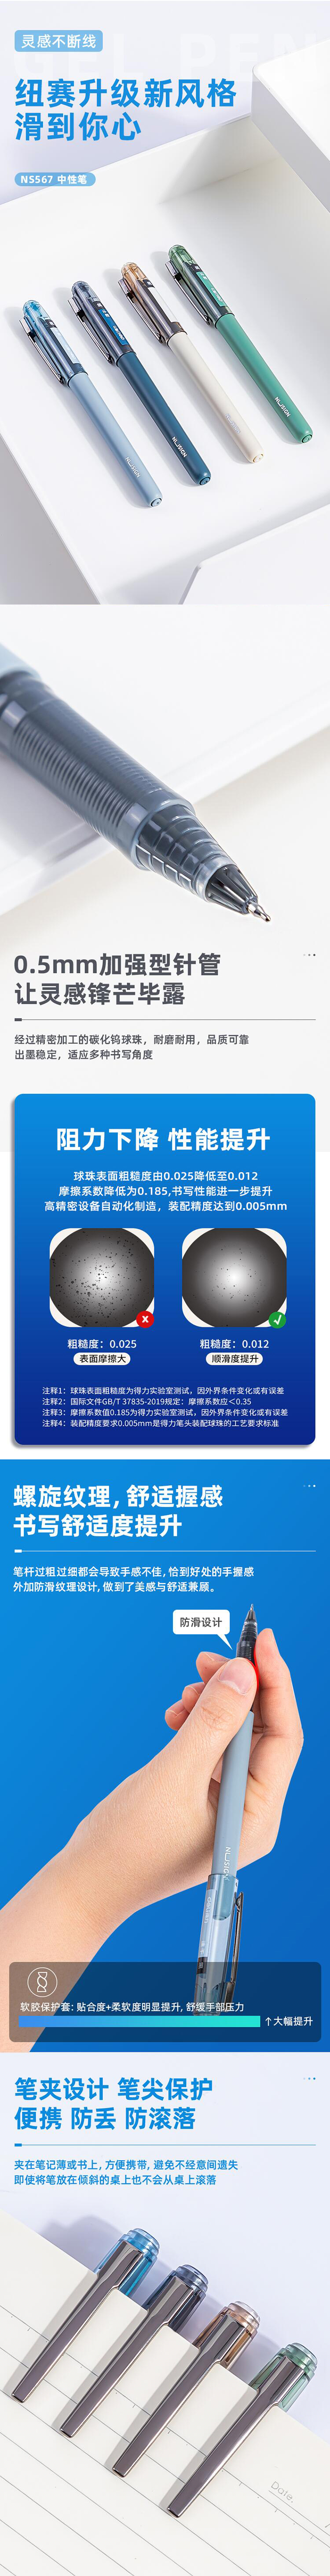 得力 deli NS567 中性笔加强型针管0.5mm速干(黑)(绿杆) .jpg